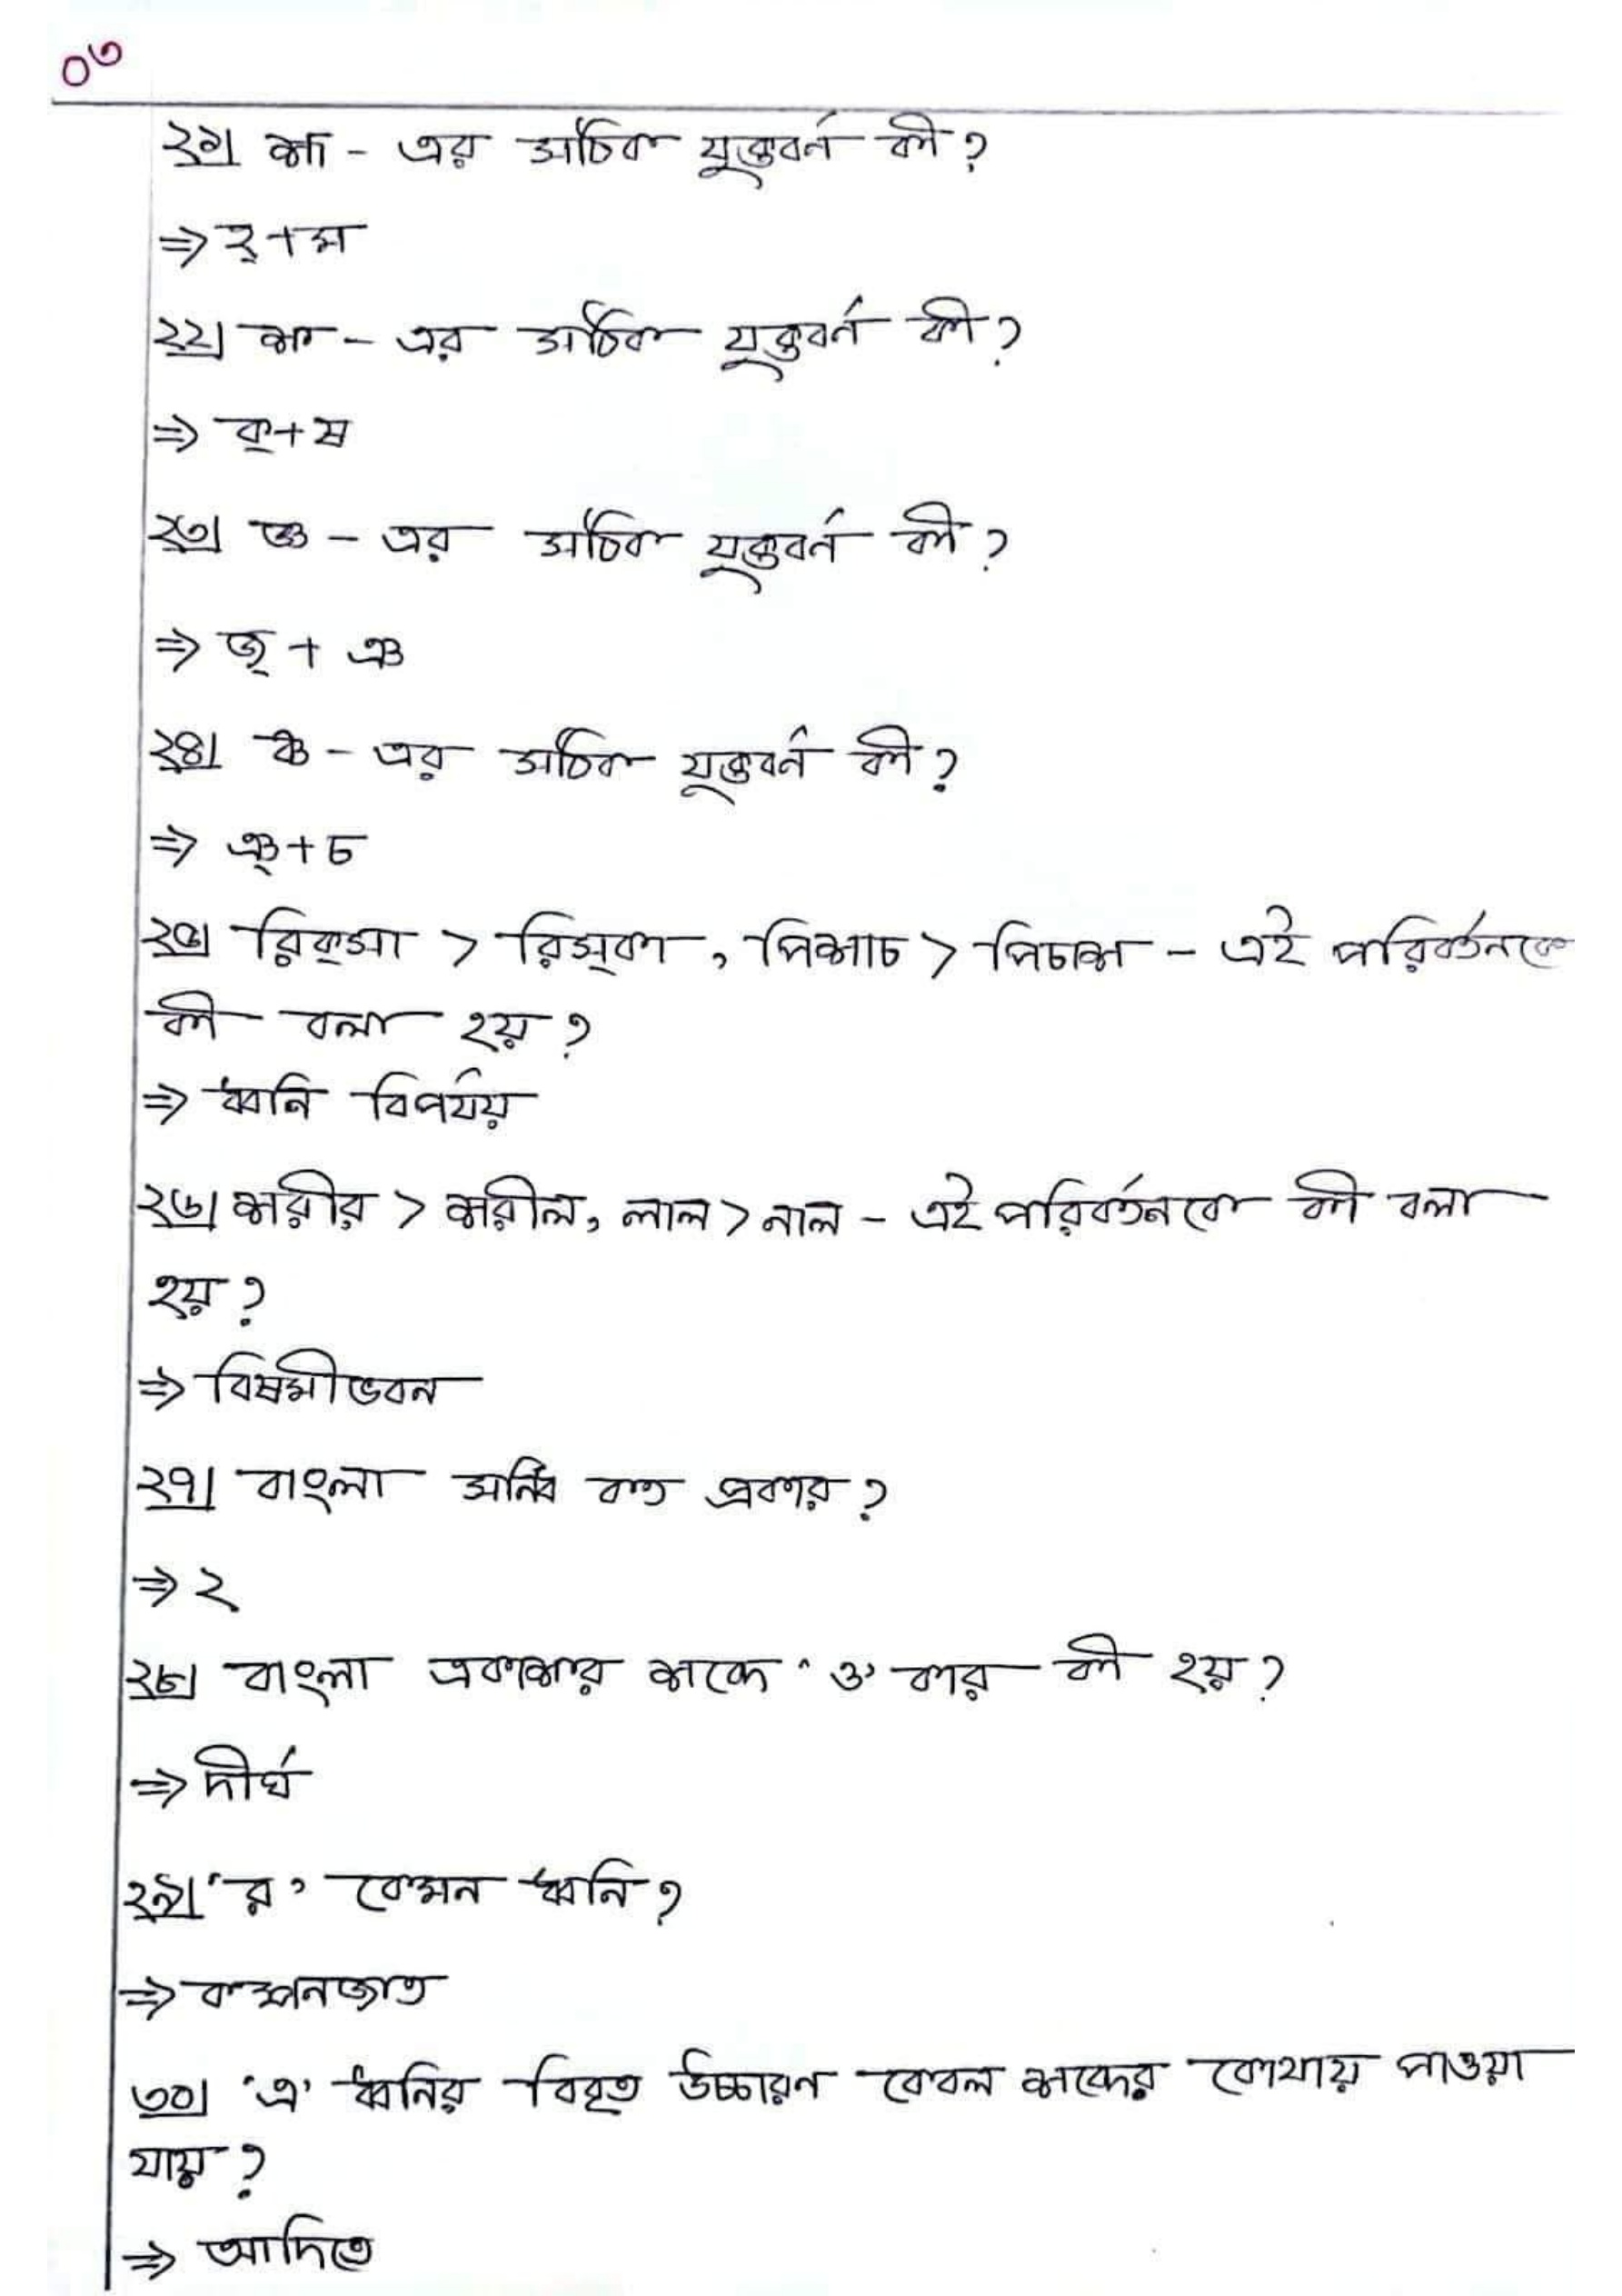 এসএসসি বাংলা ২য় পত্র এমসিকিউ নৈব্যত্তিক বহুনির্বাচনি প্রশ্নো সাজেশন ২০২২ | SSC Bangla MCQ suggestion 2022